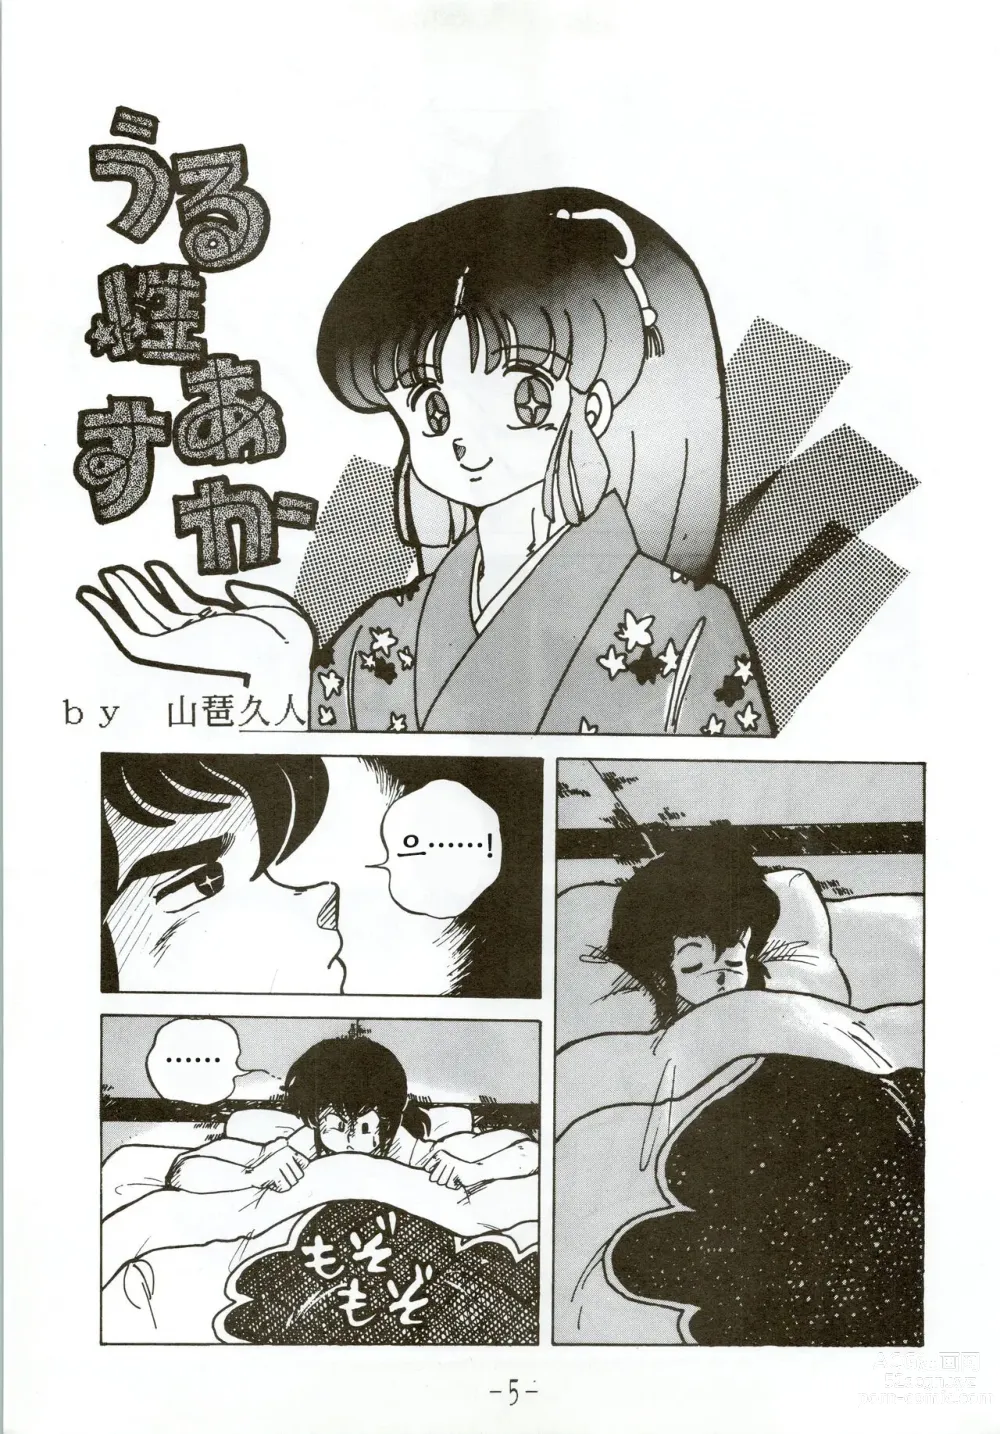 Page 5 of doujinshi Kacchuu Densetsu